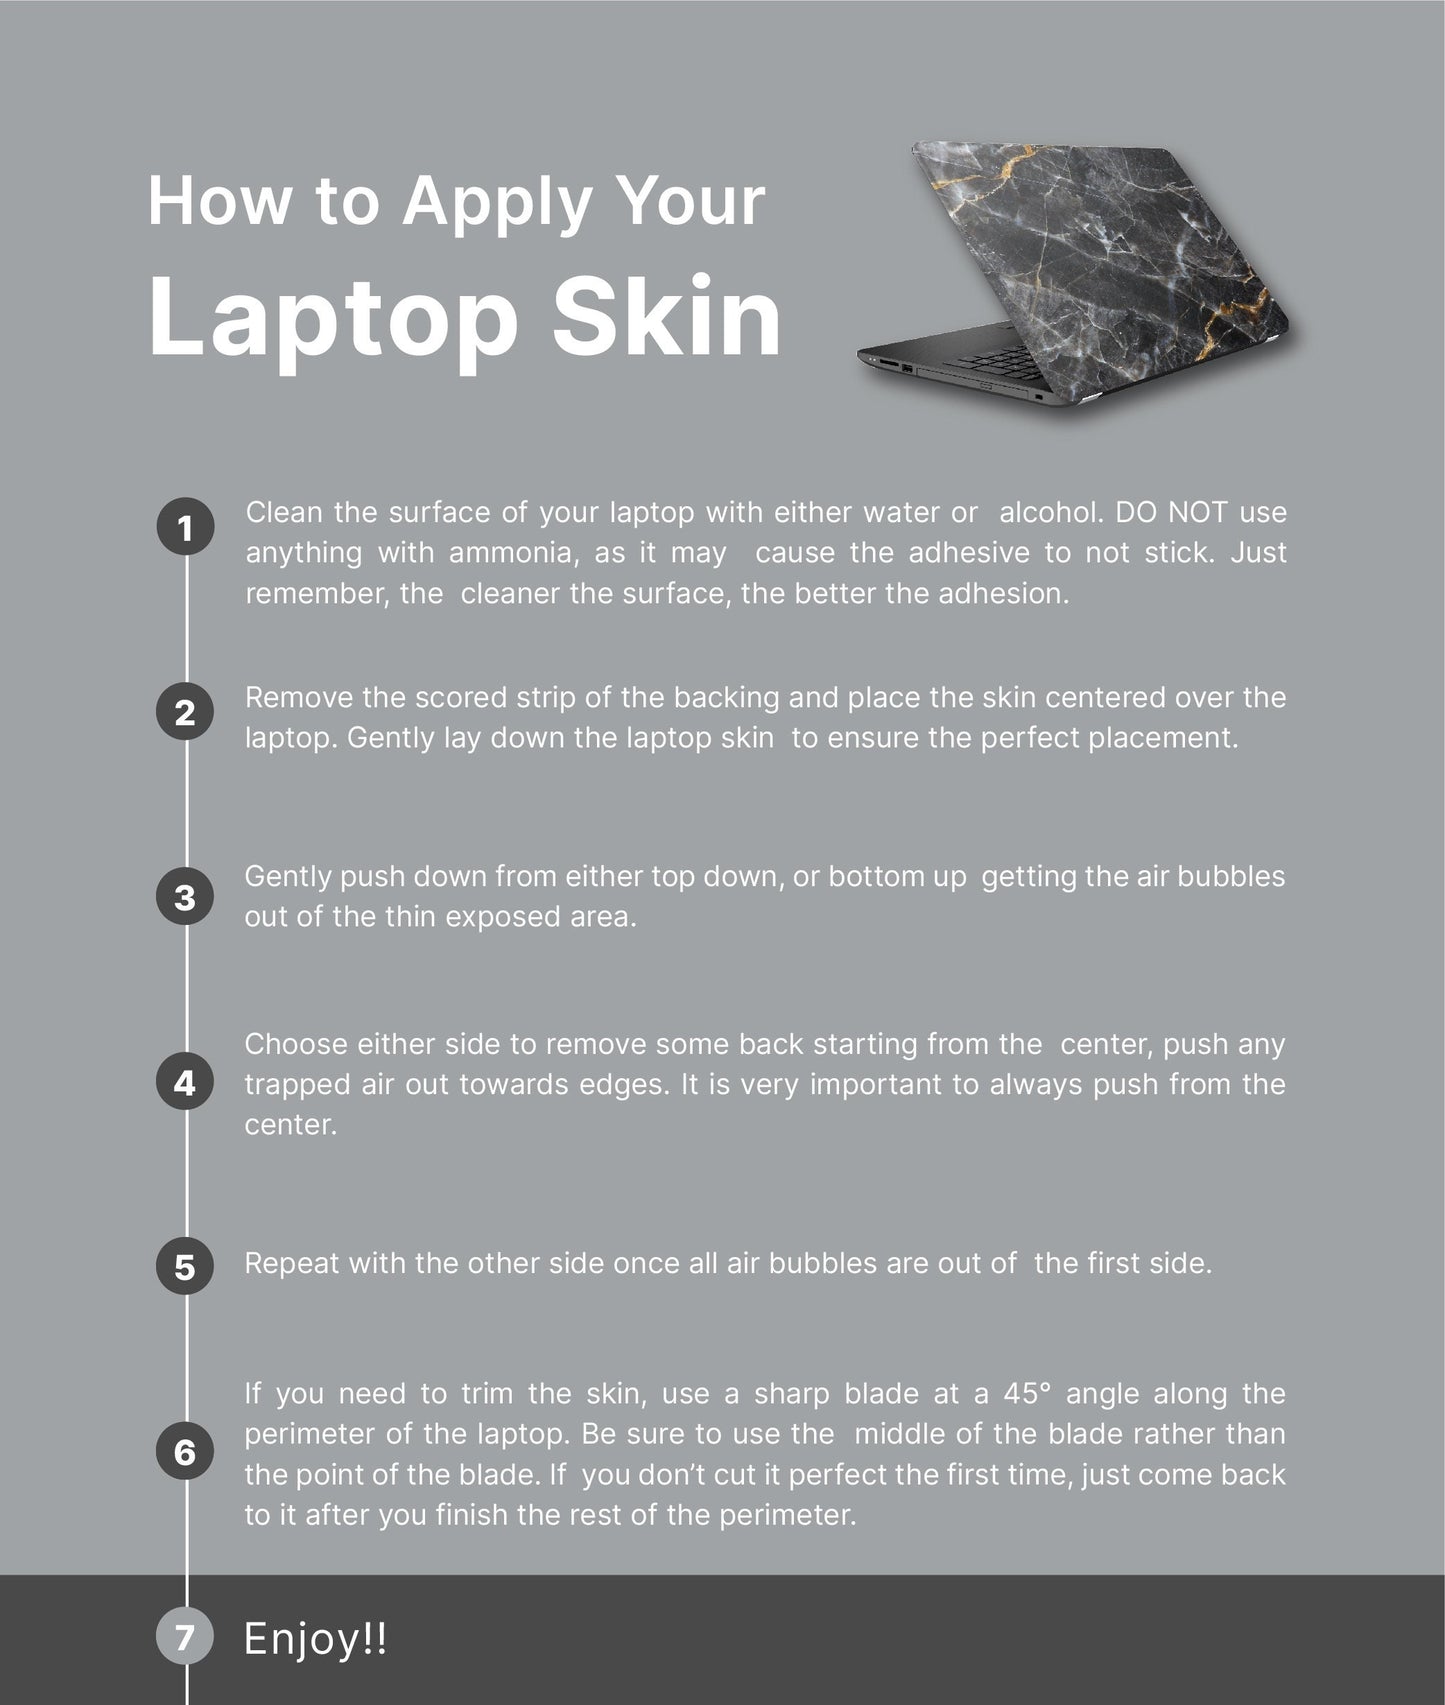 Vintage Floral Laptop Skin, Laptop Cover, Laptop Skins, Removable Laptop Skins, Laptop Decal, Customized Laptop Skin, Laptop Stickers 388